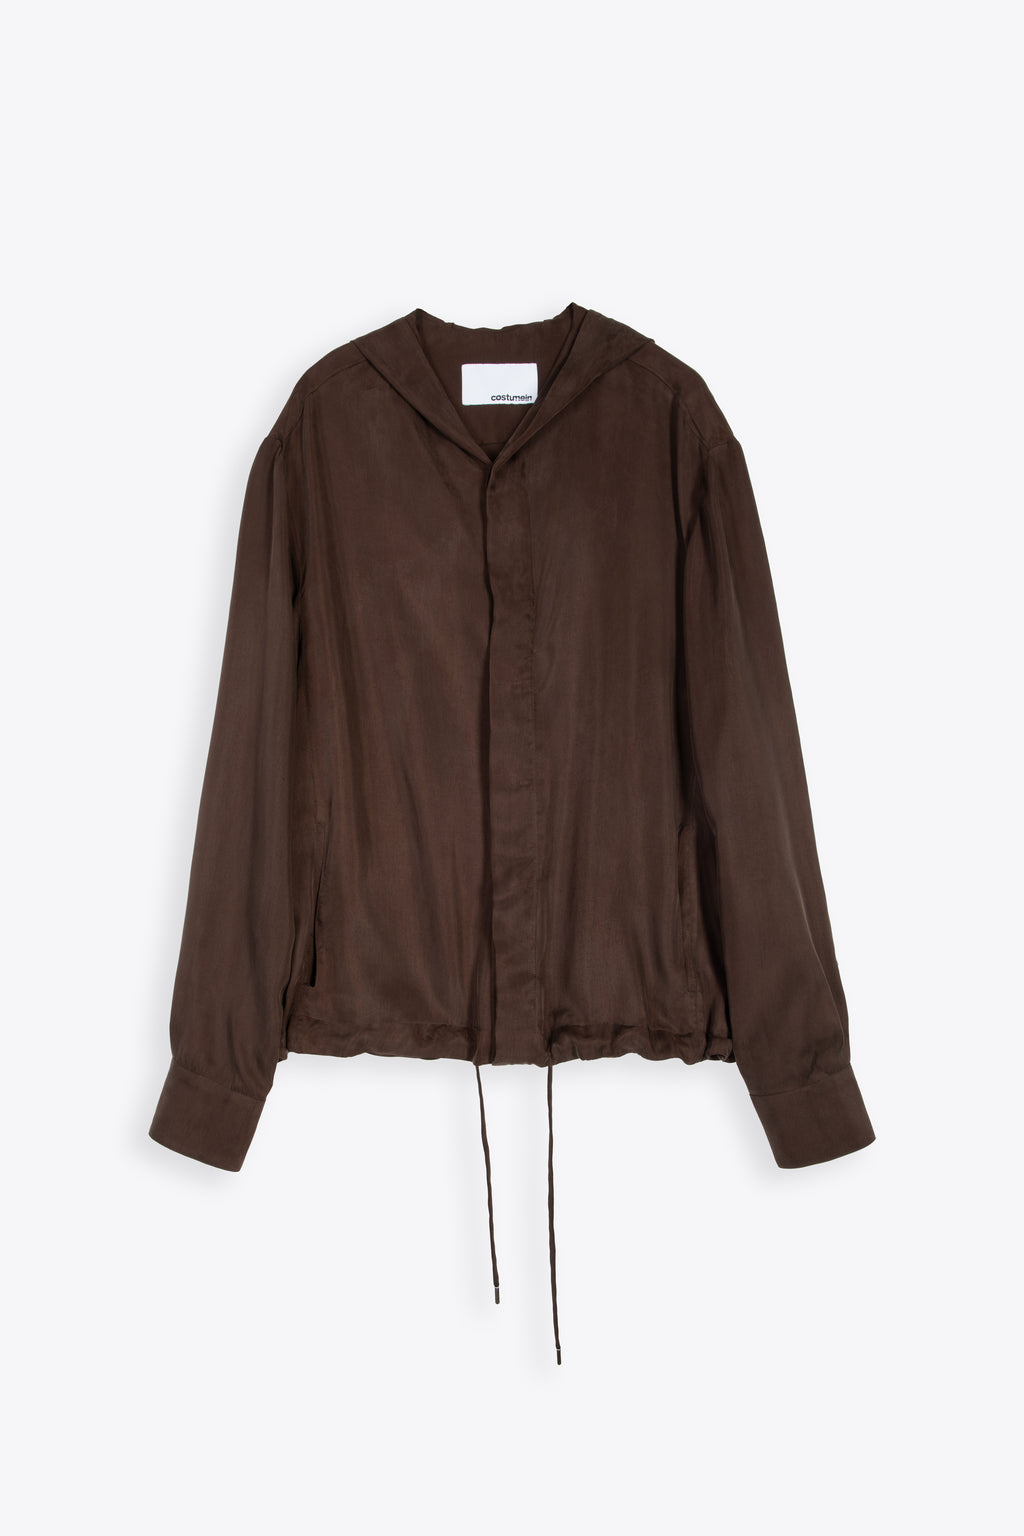 alt-image__Brown-cupro-hooded-shirt---Hoodie-Otaru-Jacket-